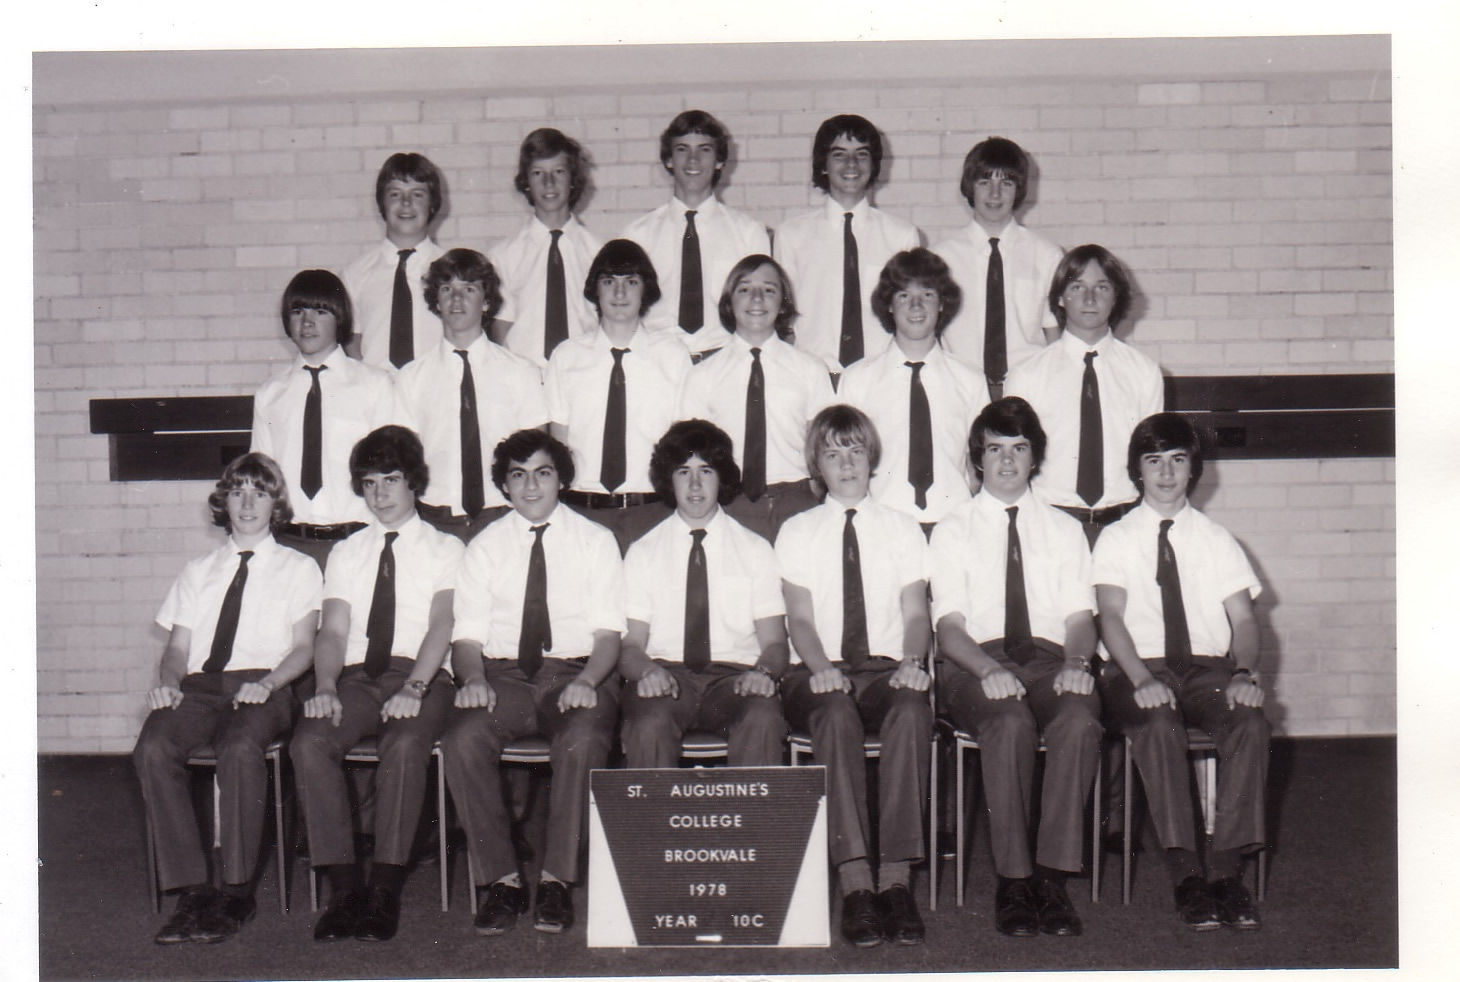 1978 - 10C class portrait